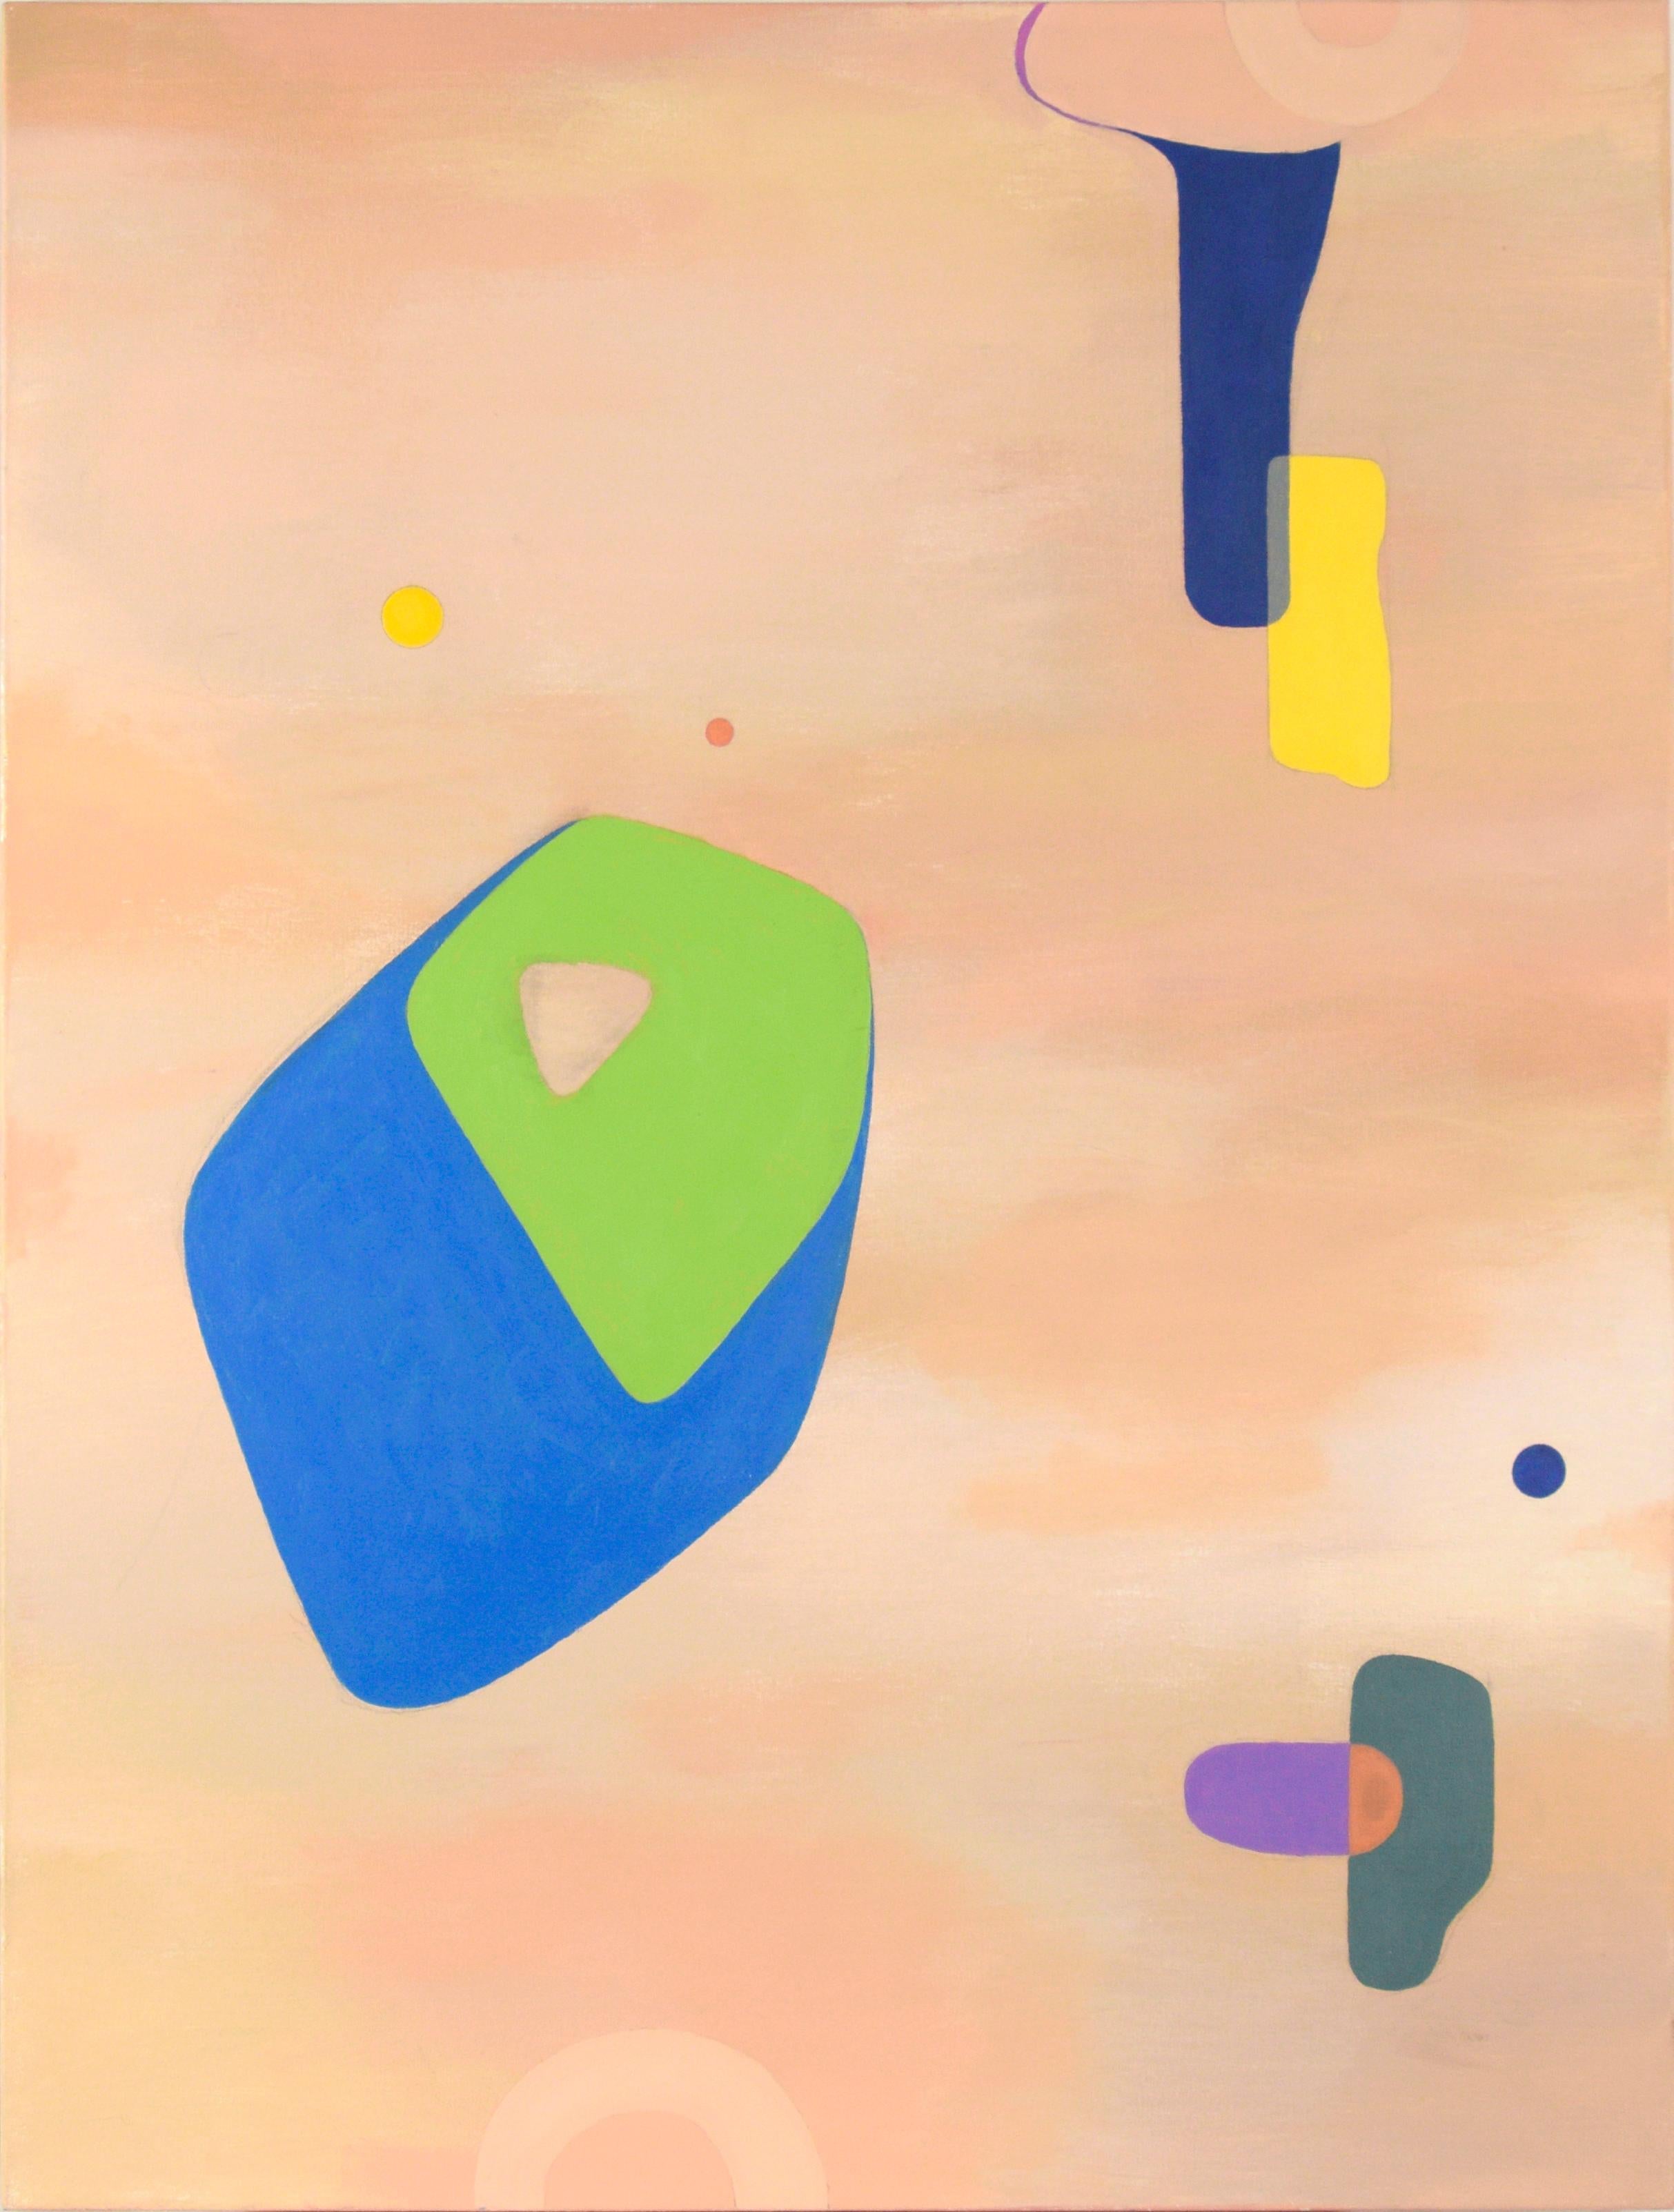 Abstract Painting Richard Turtletaub - Colors flottants - Composition géométrique abstraite à l'huile sur toile